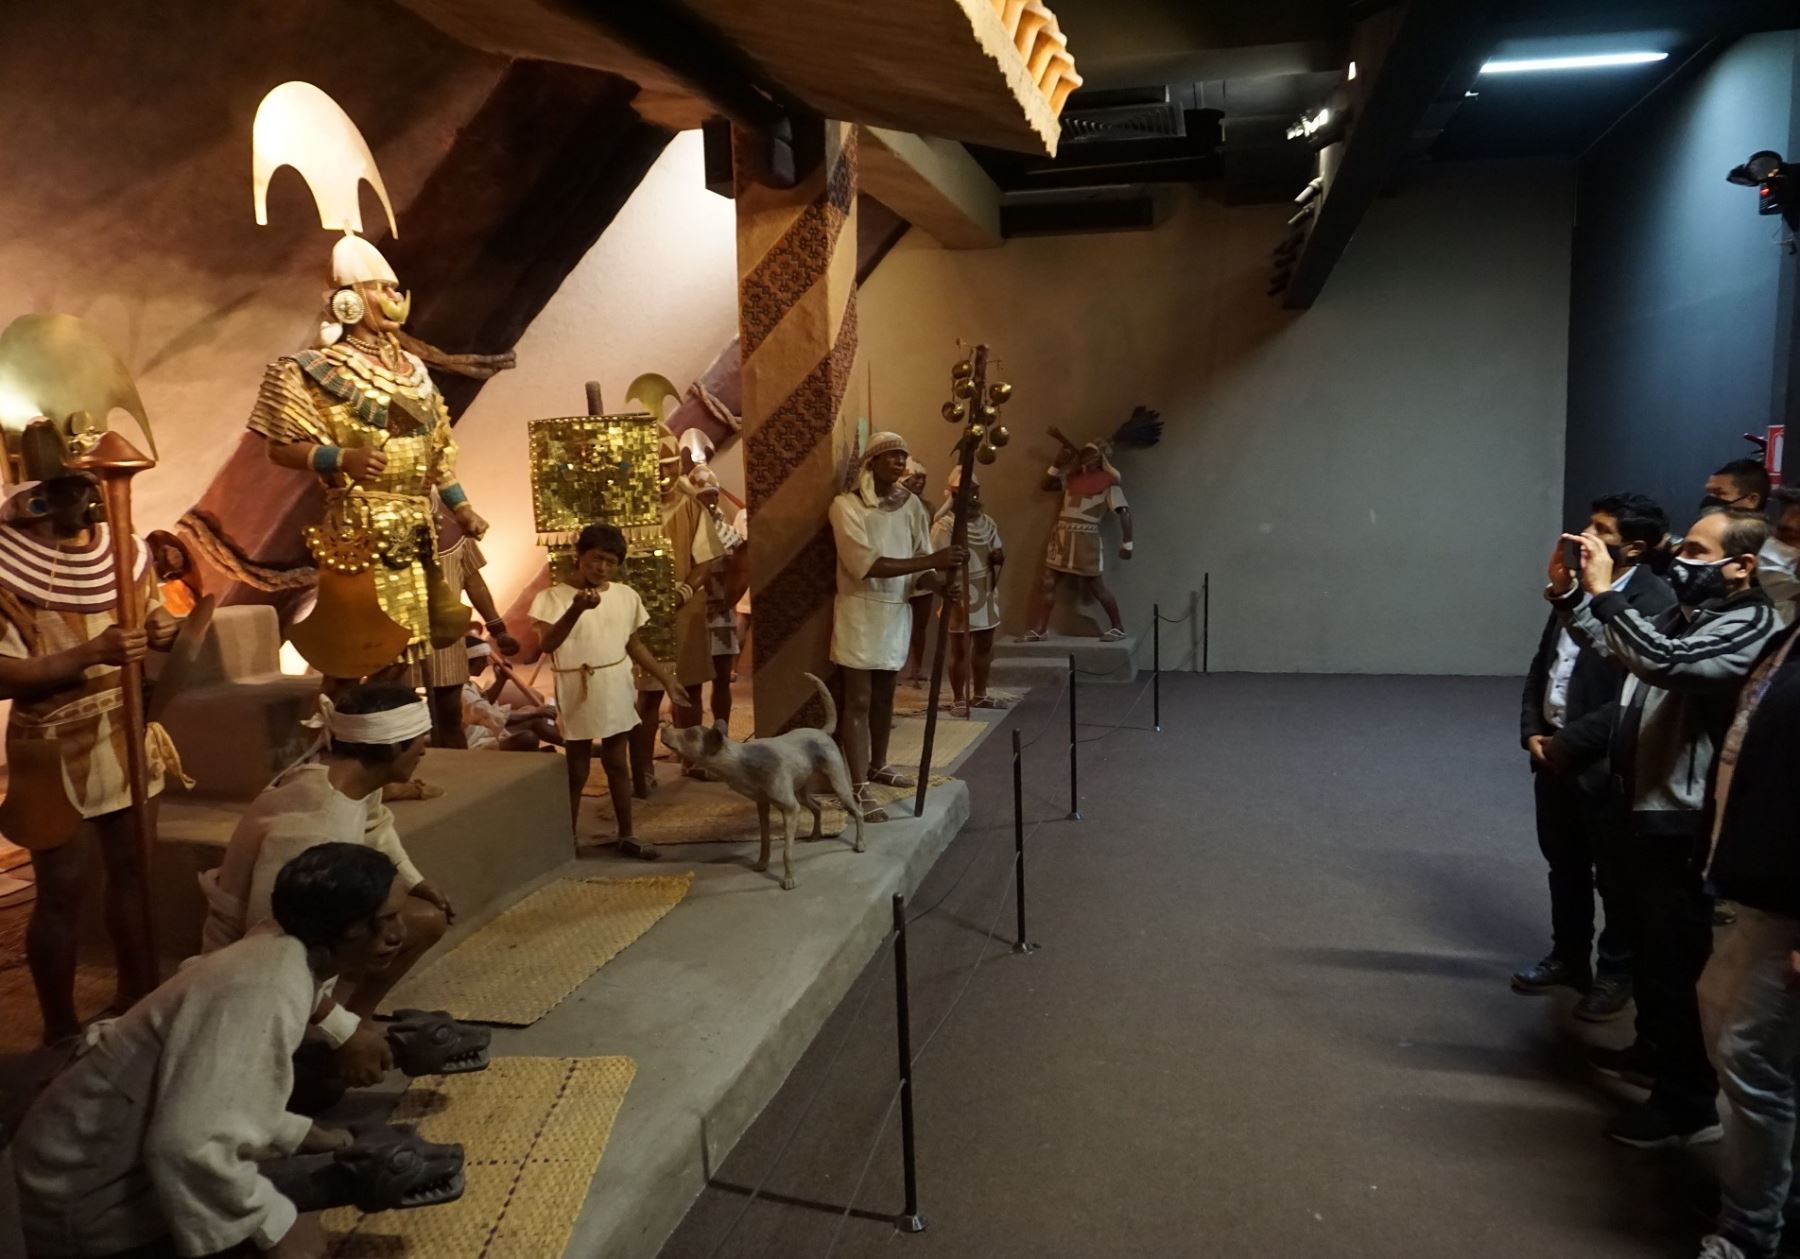 Esperado retorno. Hoy martes 26 de marzo se reabrirá la exposición permanente del Señor de Sipán en el Museo Tumbas Reales de Sipán, ubicado en Lambayeque. El principal recinto cultural de esta región. ANDINA/Difusión